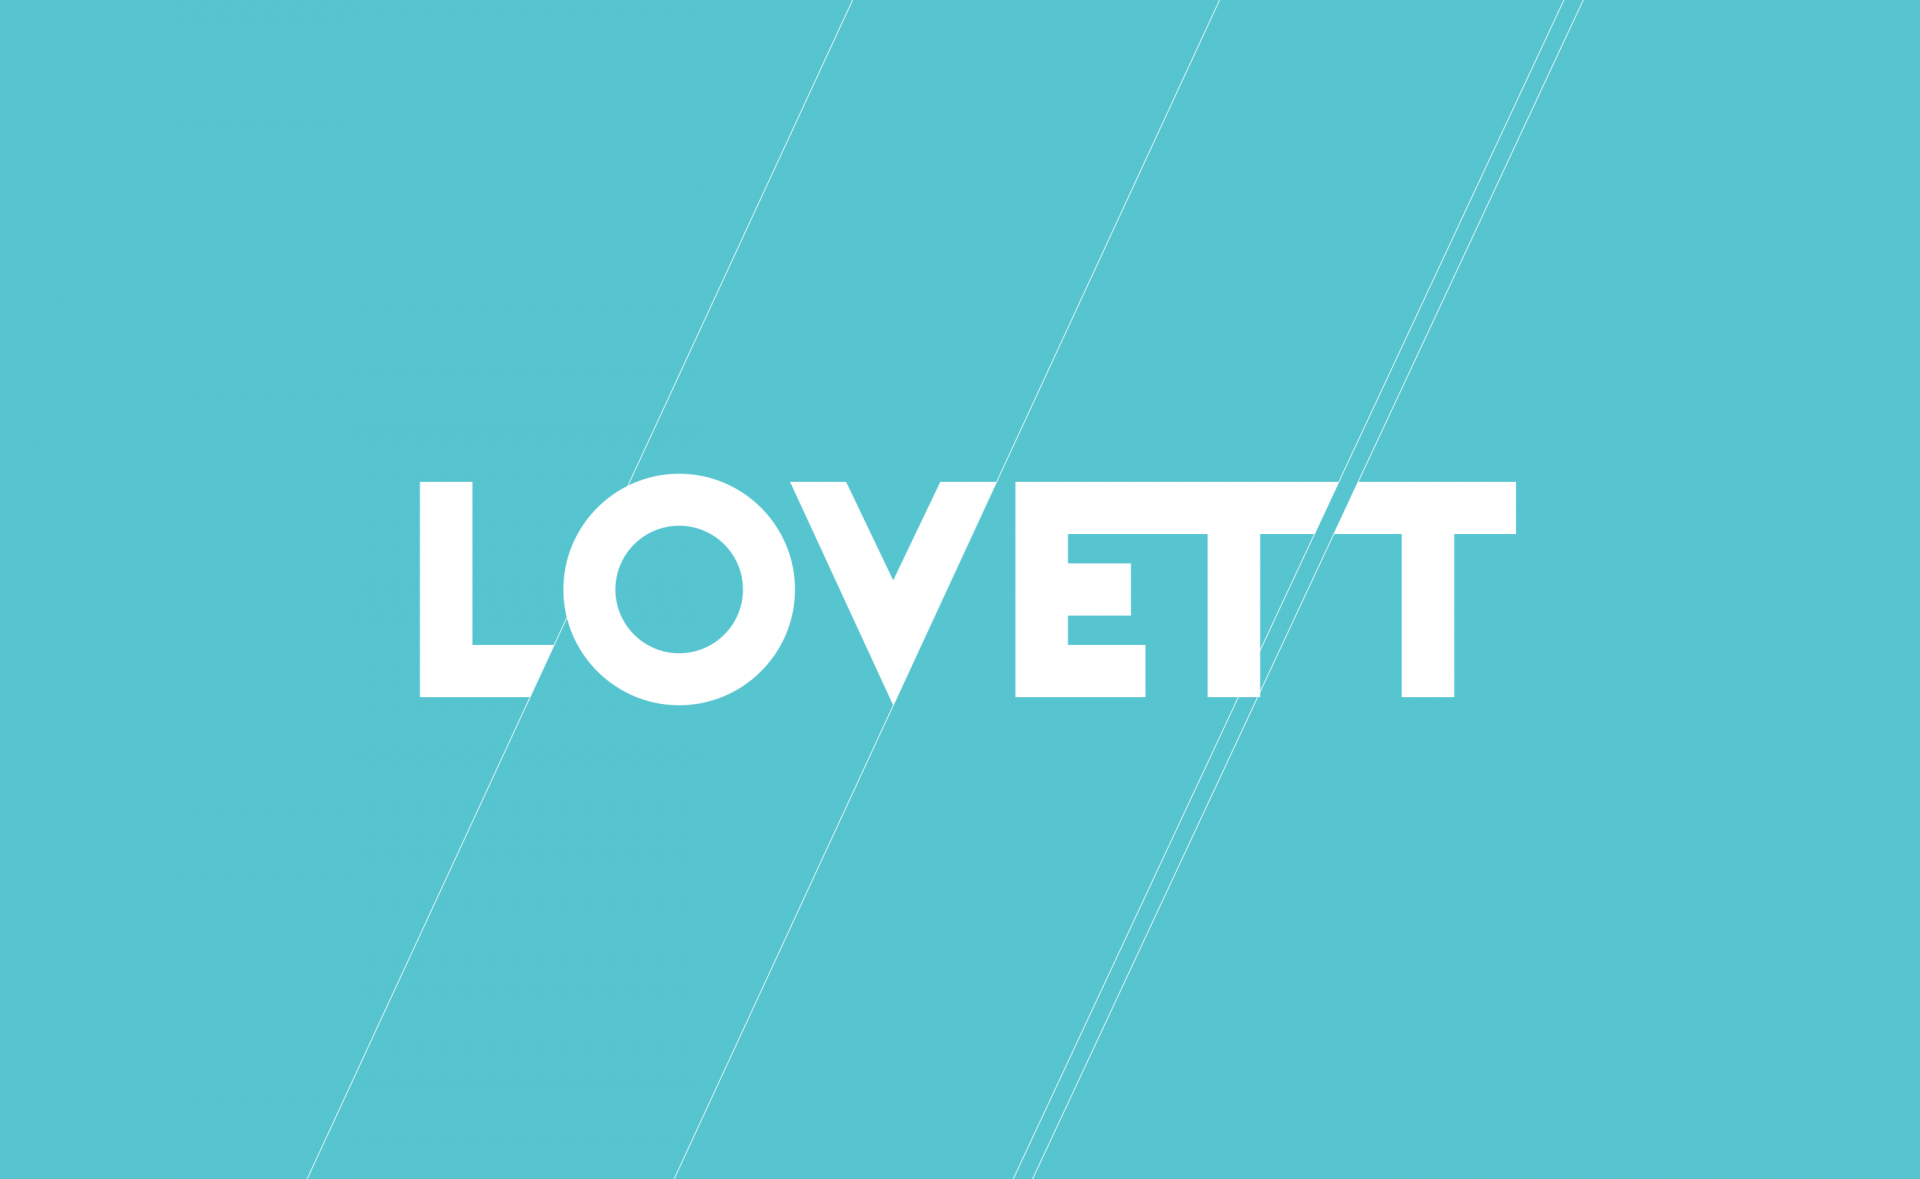 Lovett Custom Homes Logo Design for Construction